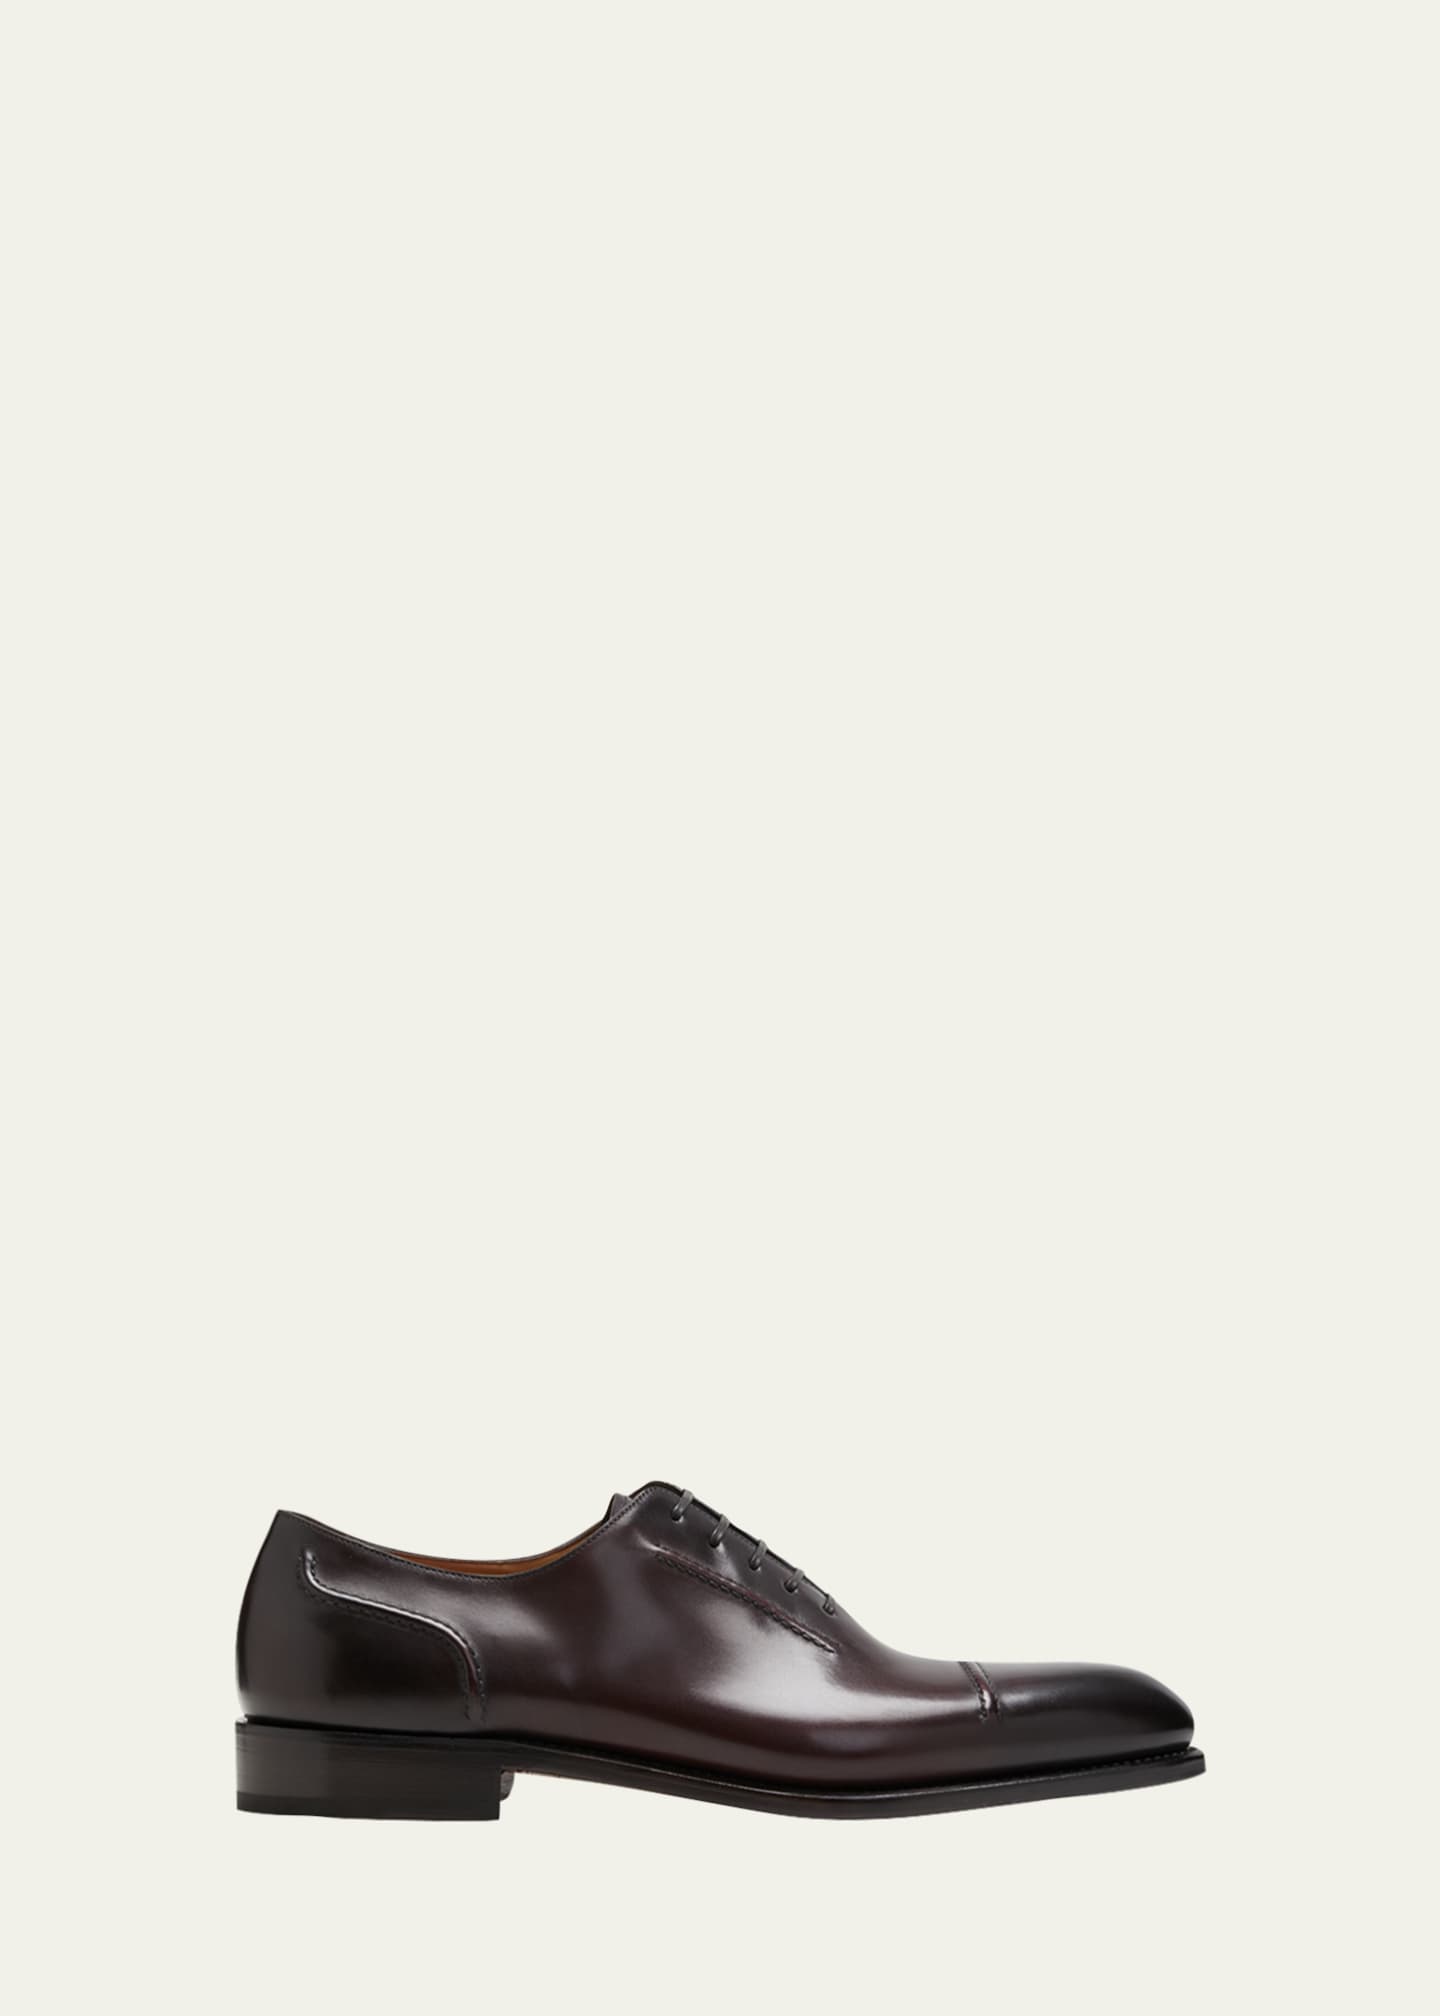 Ferragamo Men's Giave Cap Toe Leather Oxfords - Bergdorf Goodman